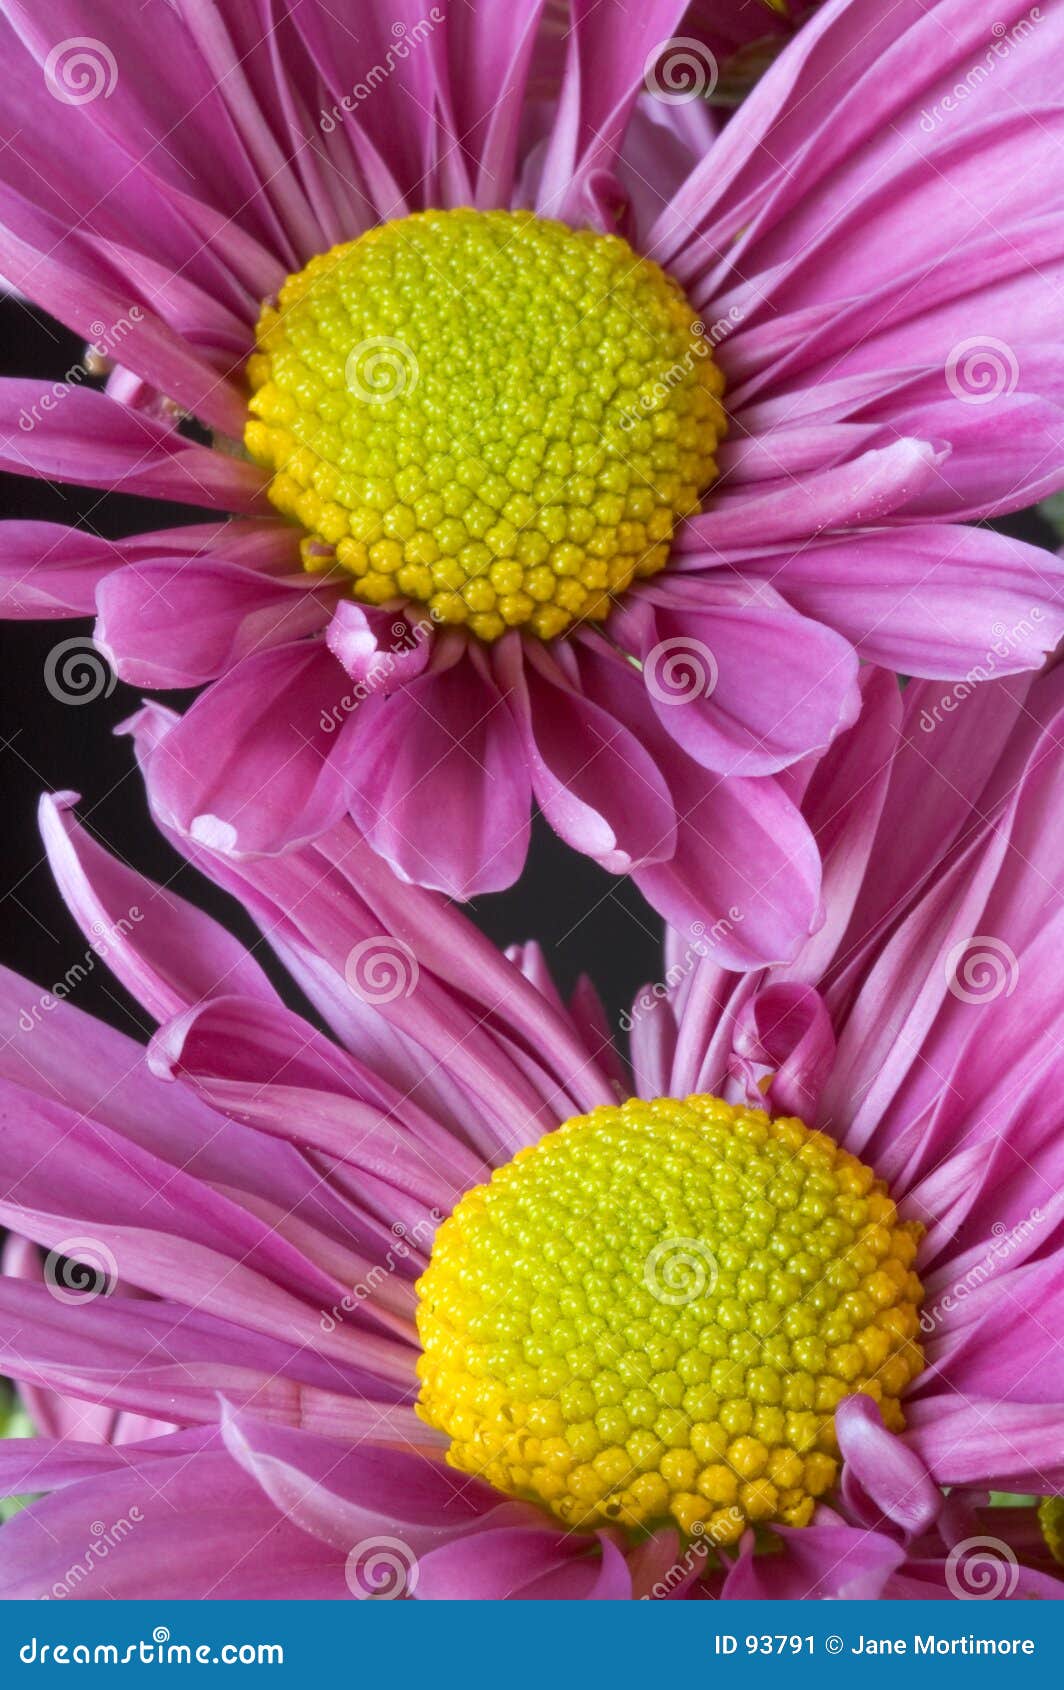 lavendar daisies closeup